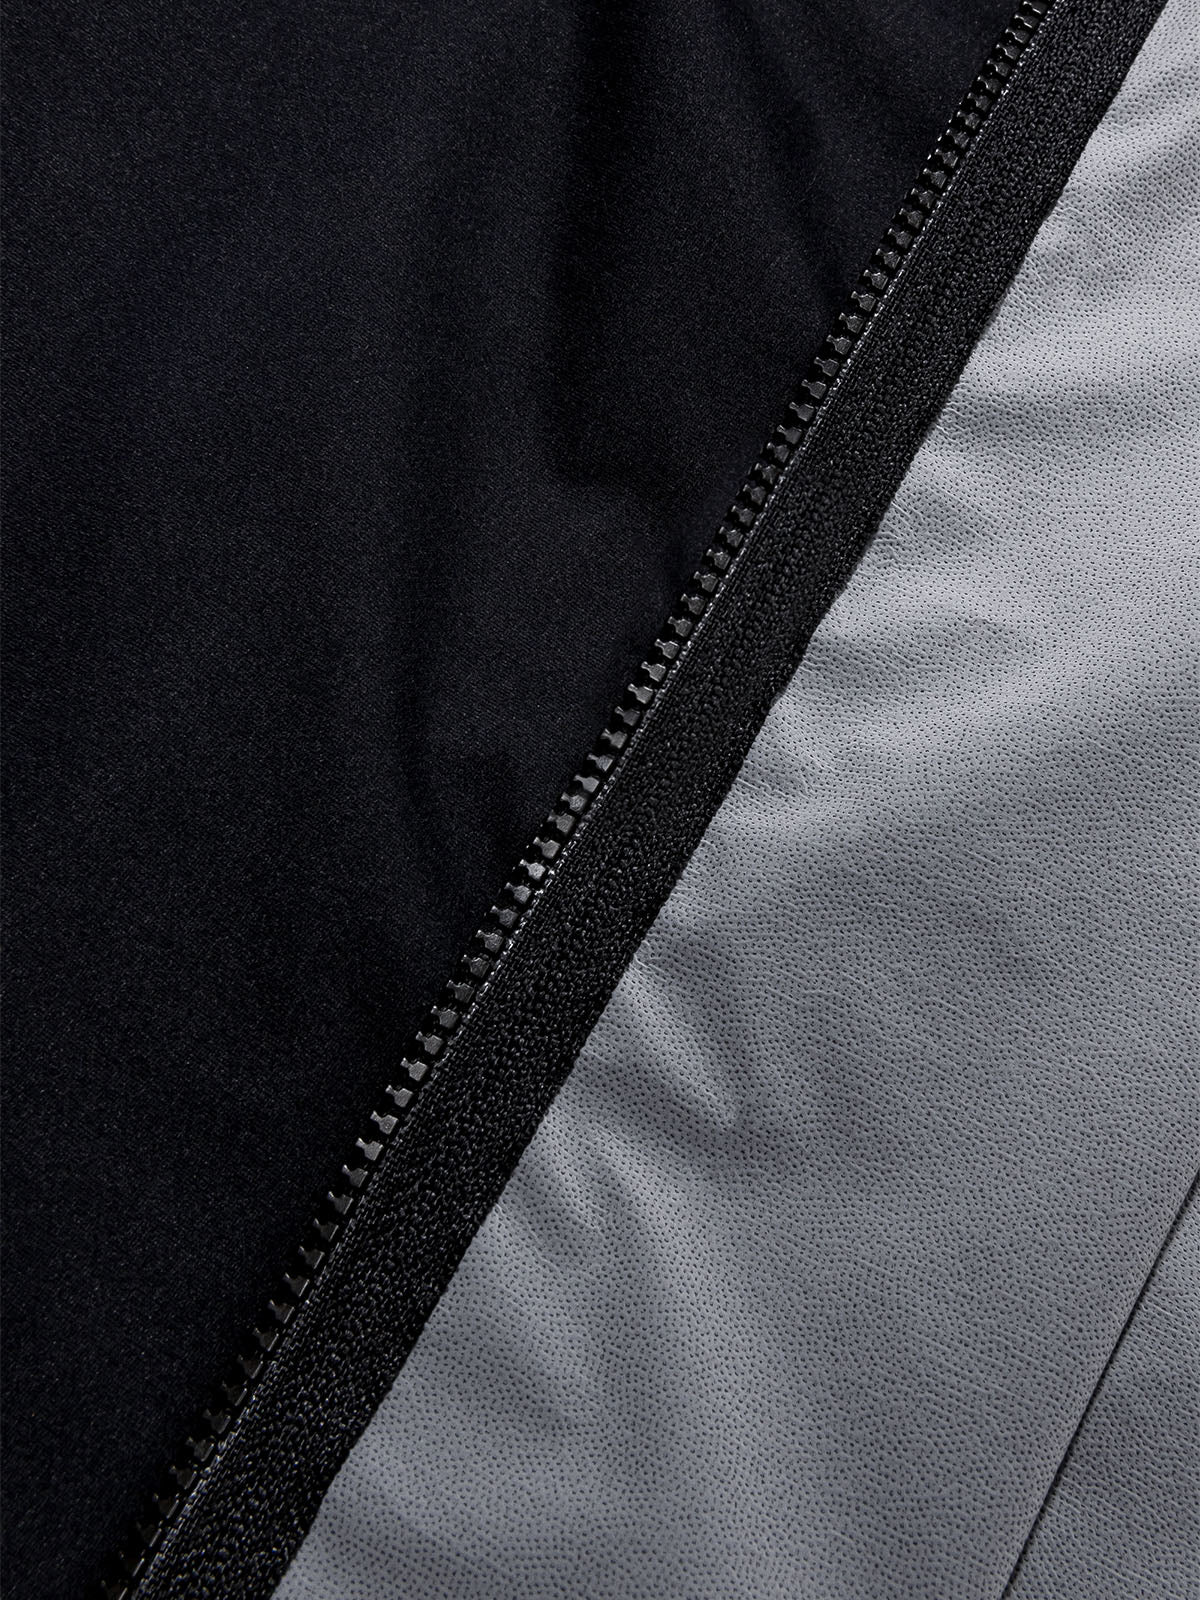 Altosphere Jacket från Mission Workshop - vädertåliga väskor och tekniska kläder - San Francisco och Los Angeles - byggd för att tåla - garanterad för alltid